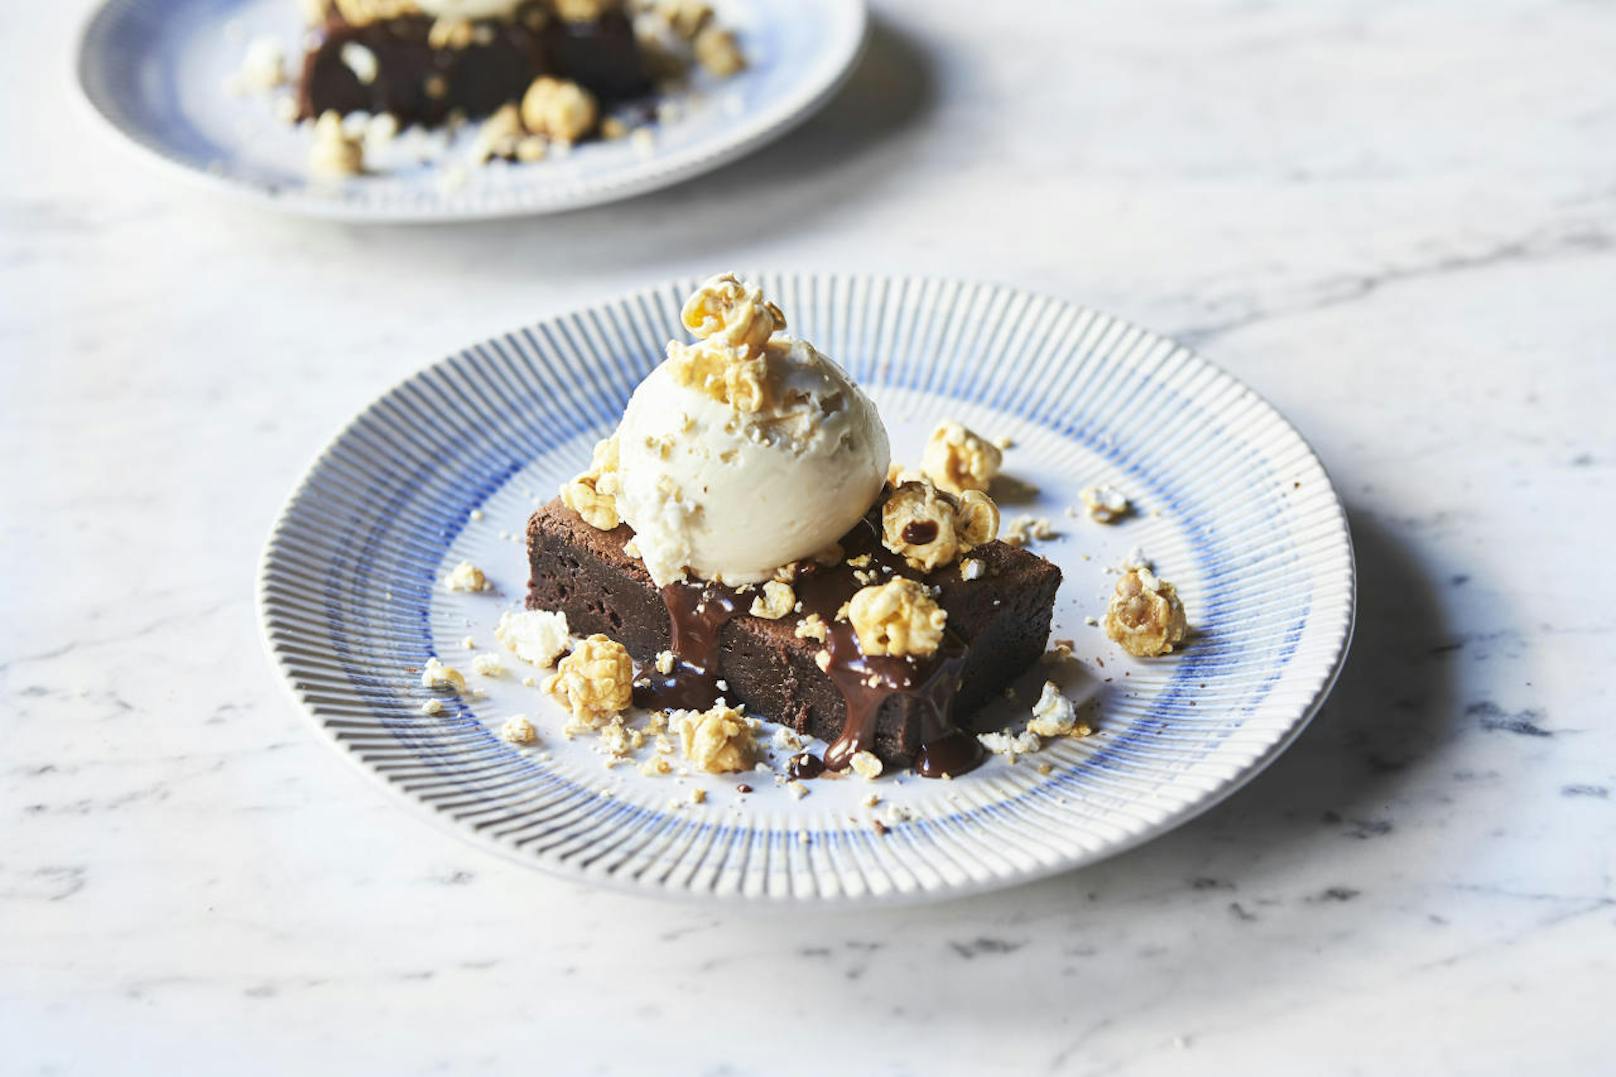 Jamie Oliver's Epic Chocolate Brownie